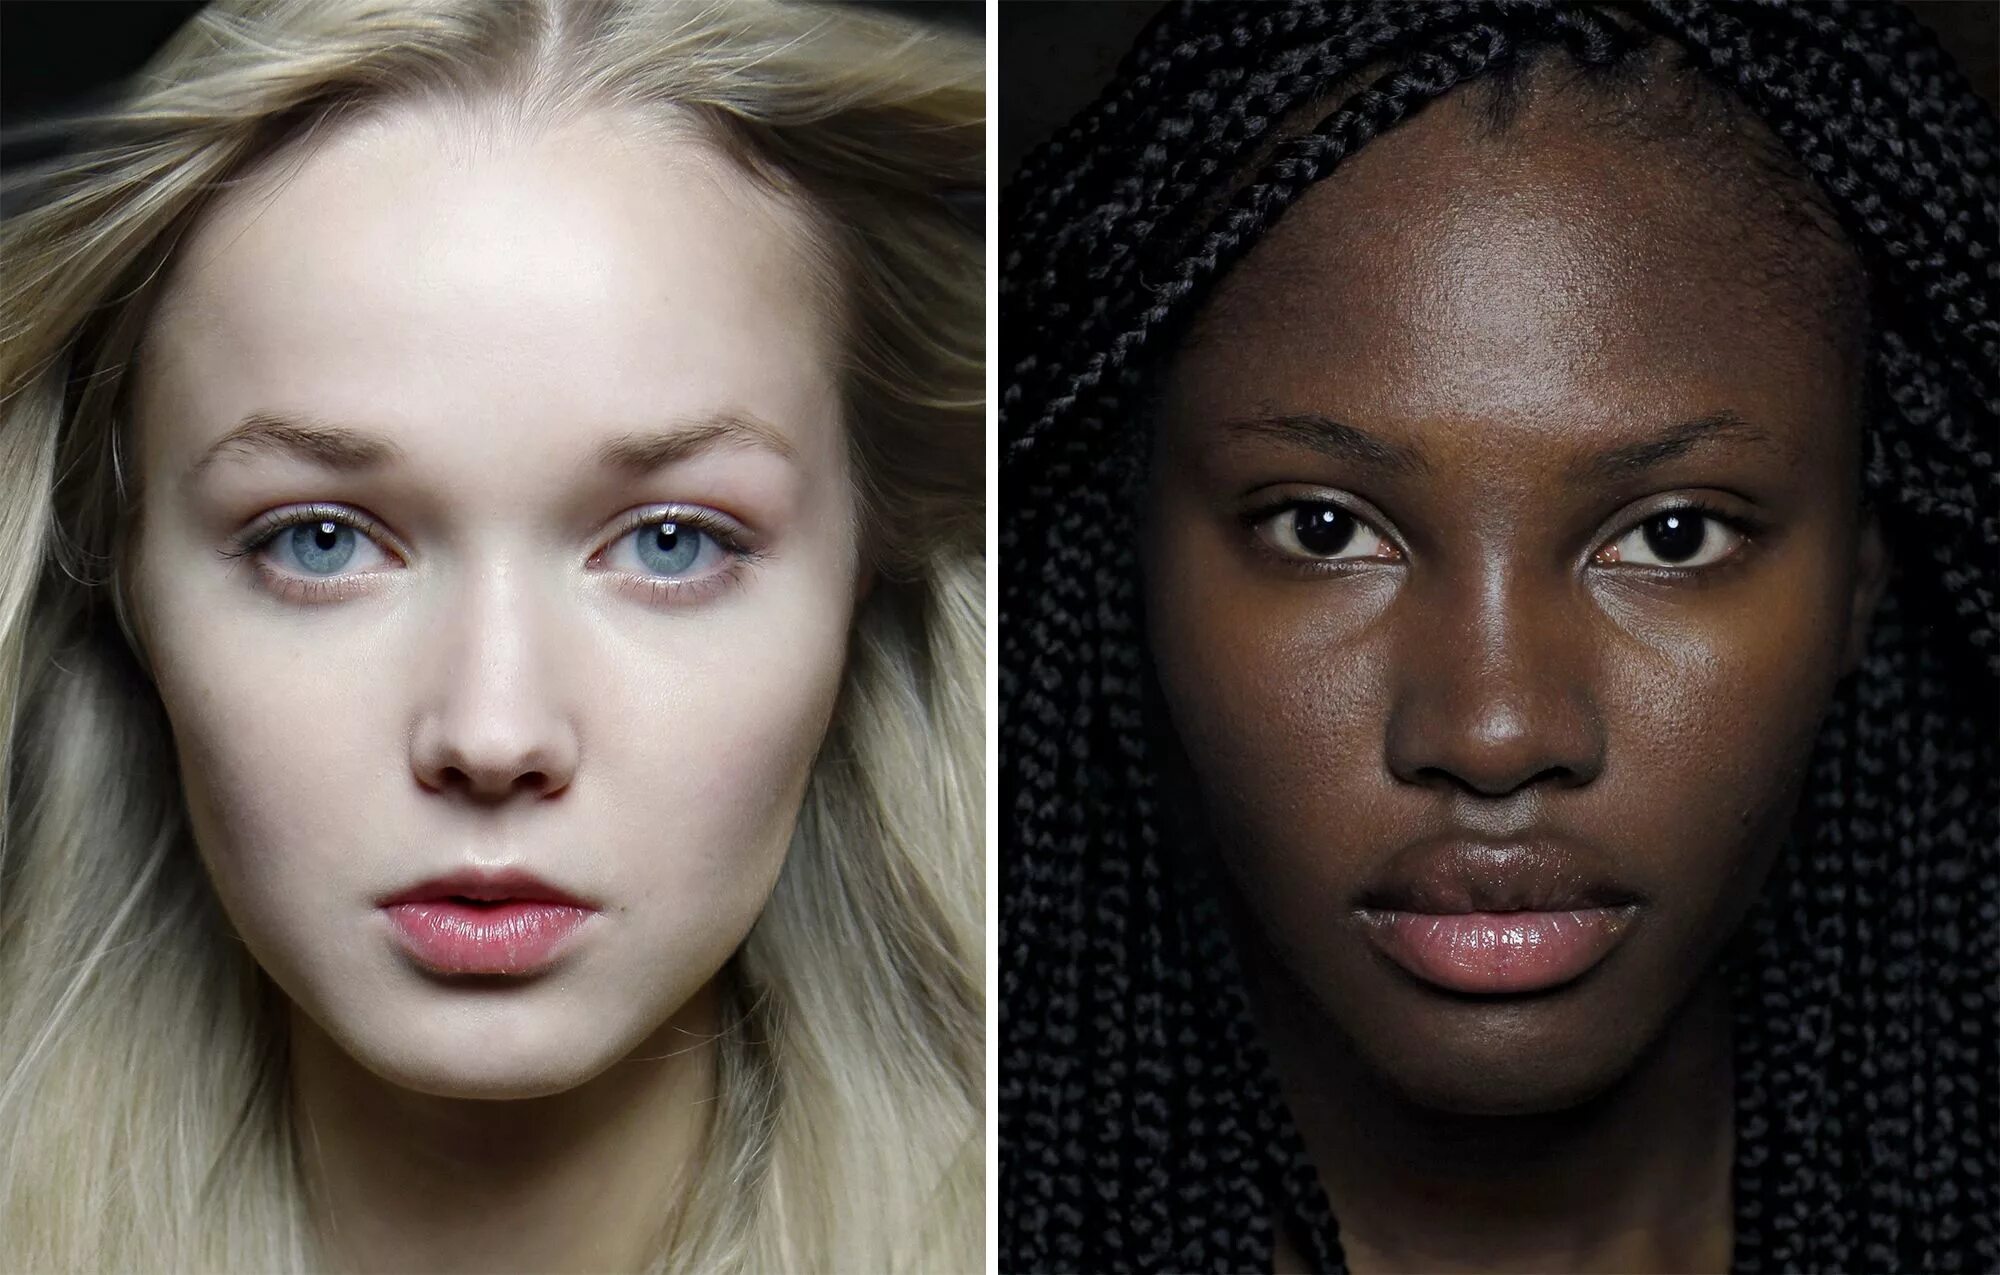 Люди с разной внешностью. Женщины разных рас. Девушки с разным цветом кожи. Европейцы внешность. Светлые волосы национальность